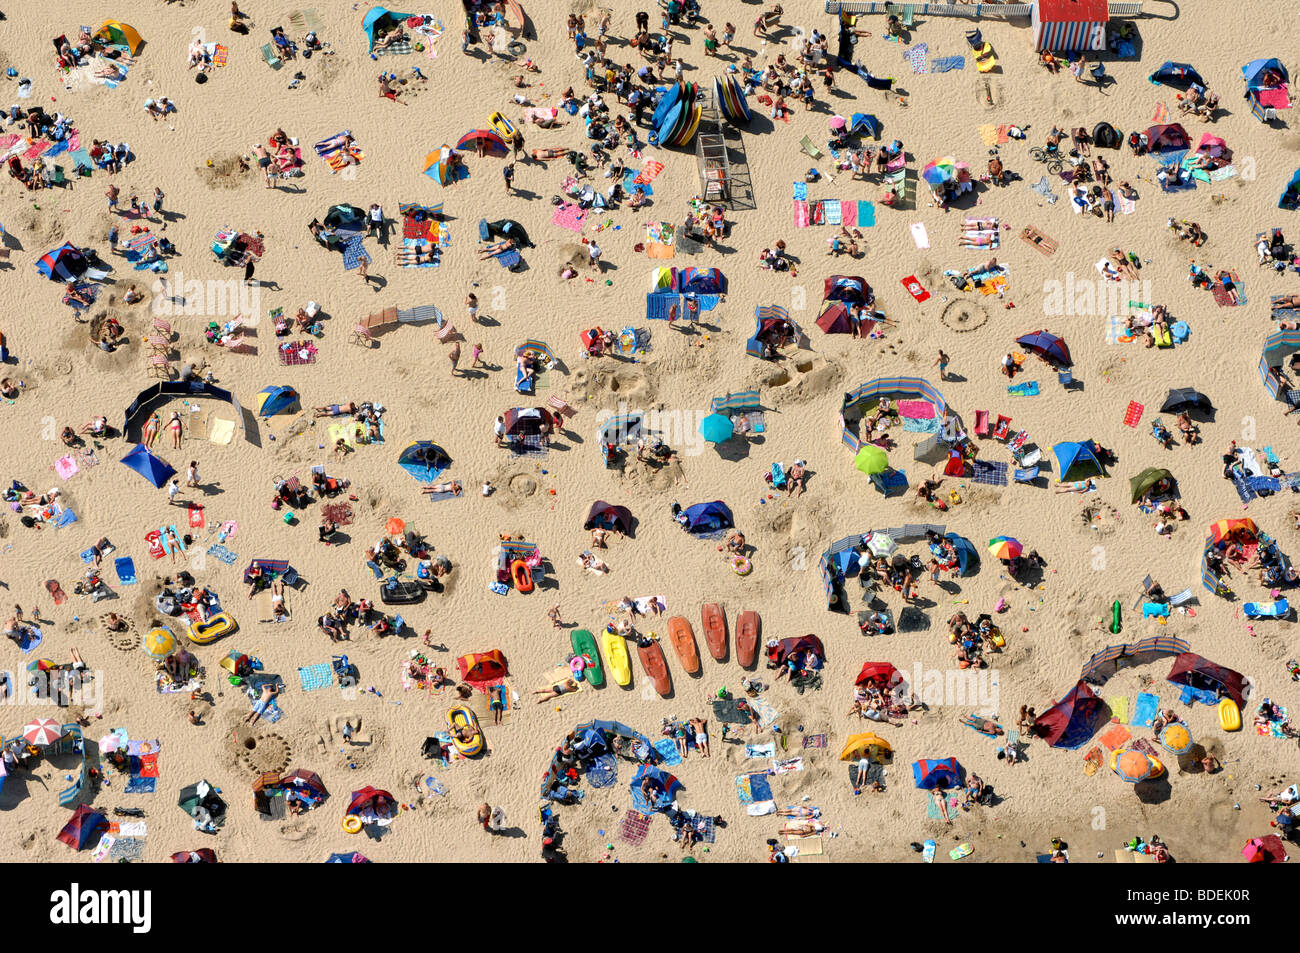 Plage, Plage de Weymouth, vue aérienne de touristes sur la plage de Weymouth par temps chaud dans le Dorset, Angleterre, Royaume-Uni Banque D'Images